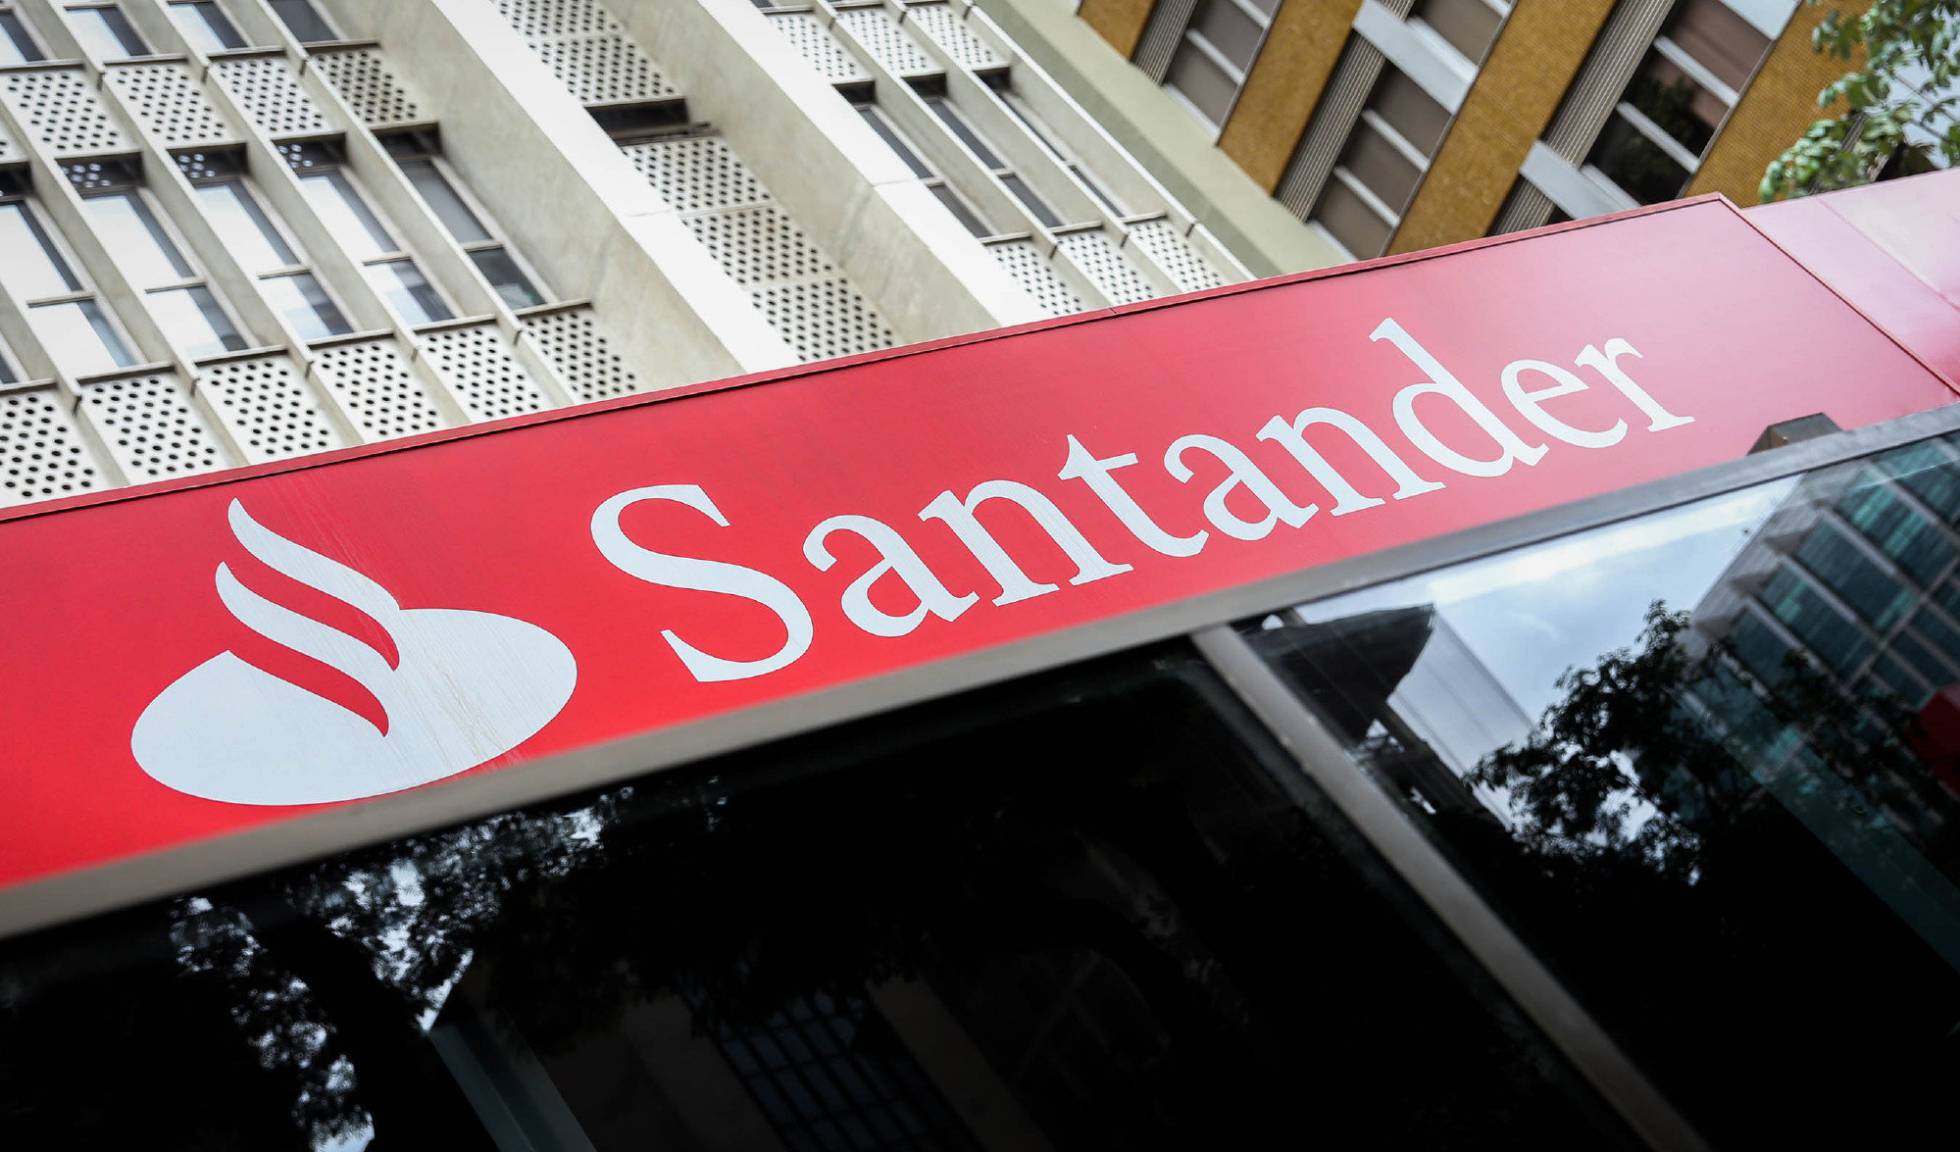 Fondos: Los 5 fondos de inversión más rentables de Banco Santander ganan un 10% | Autor del artículo: María Gómez Silva